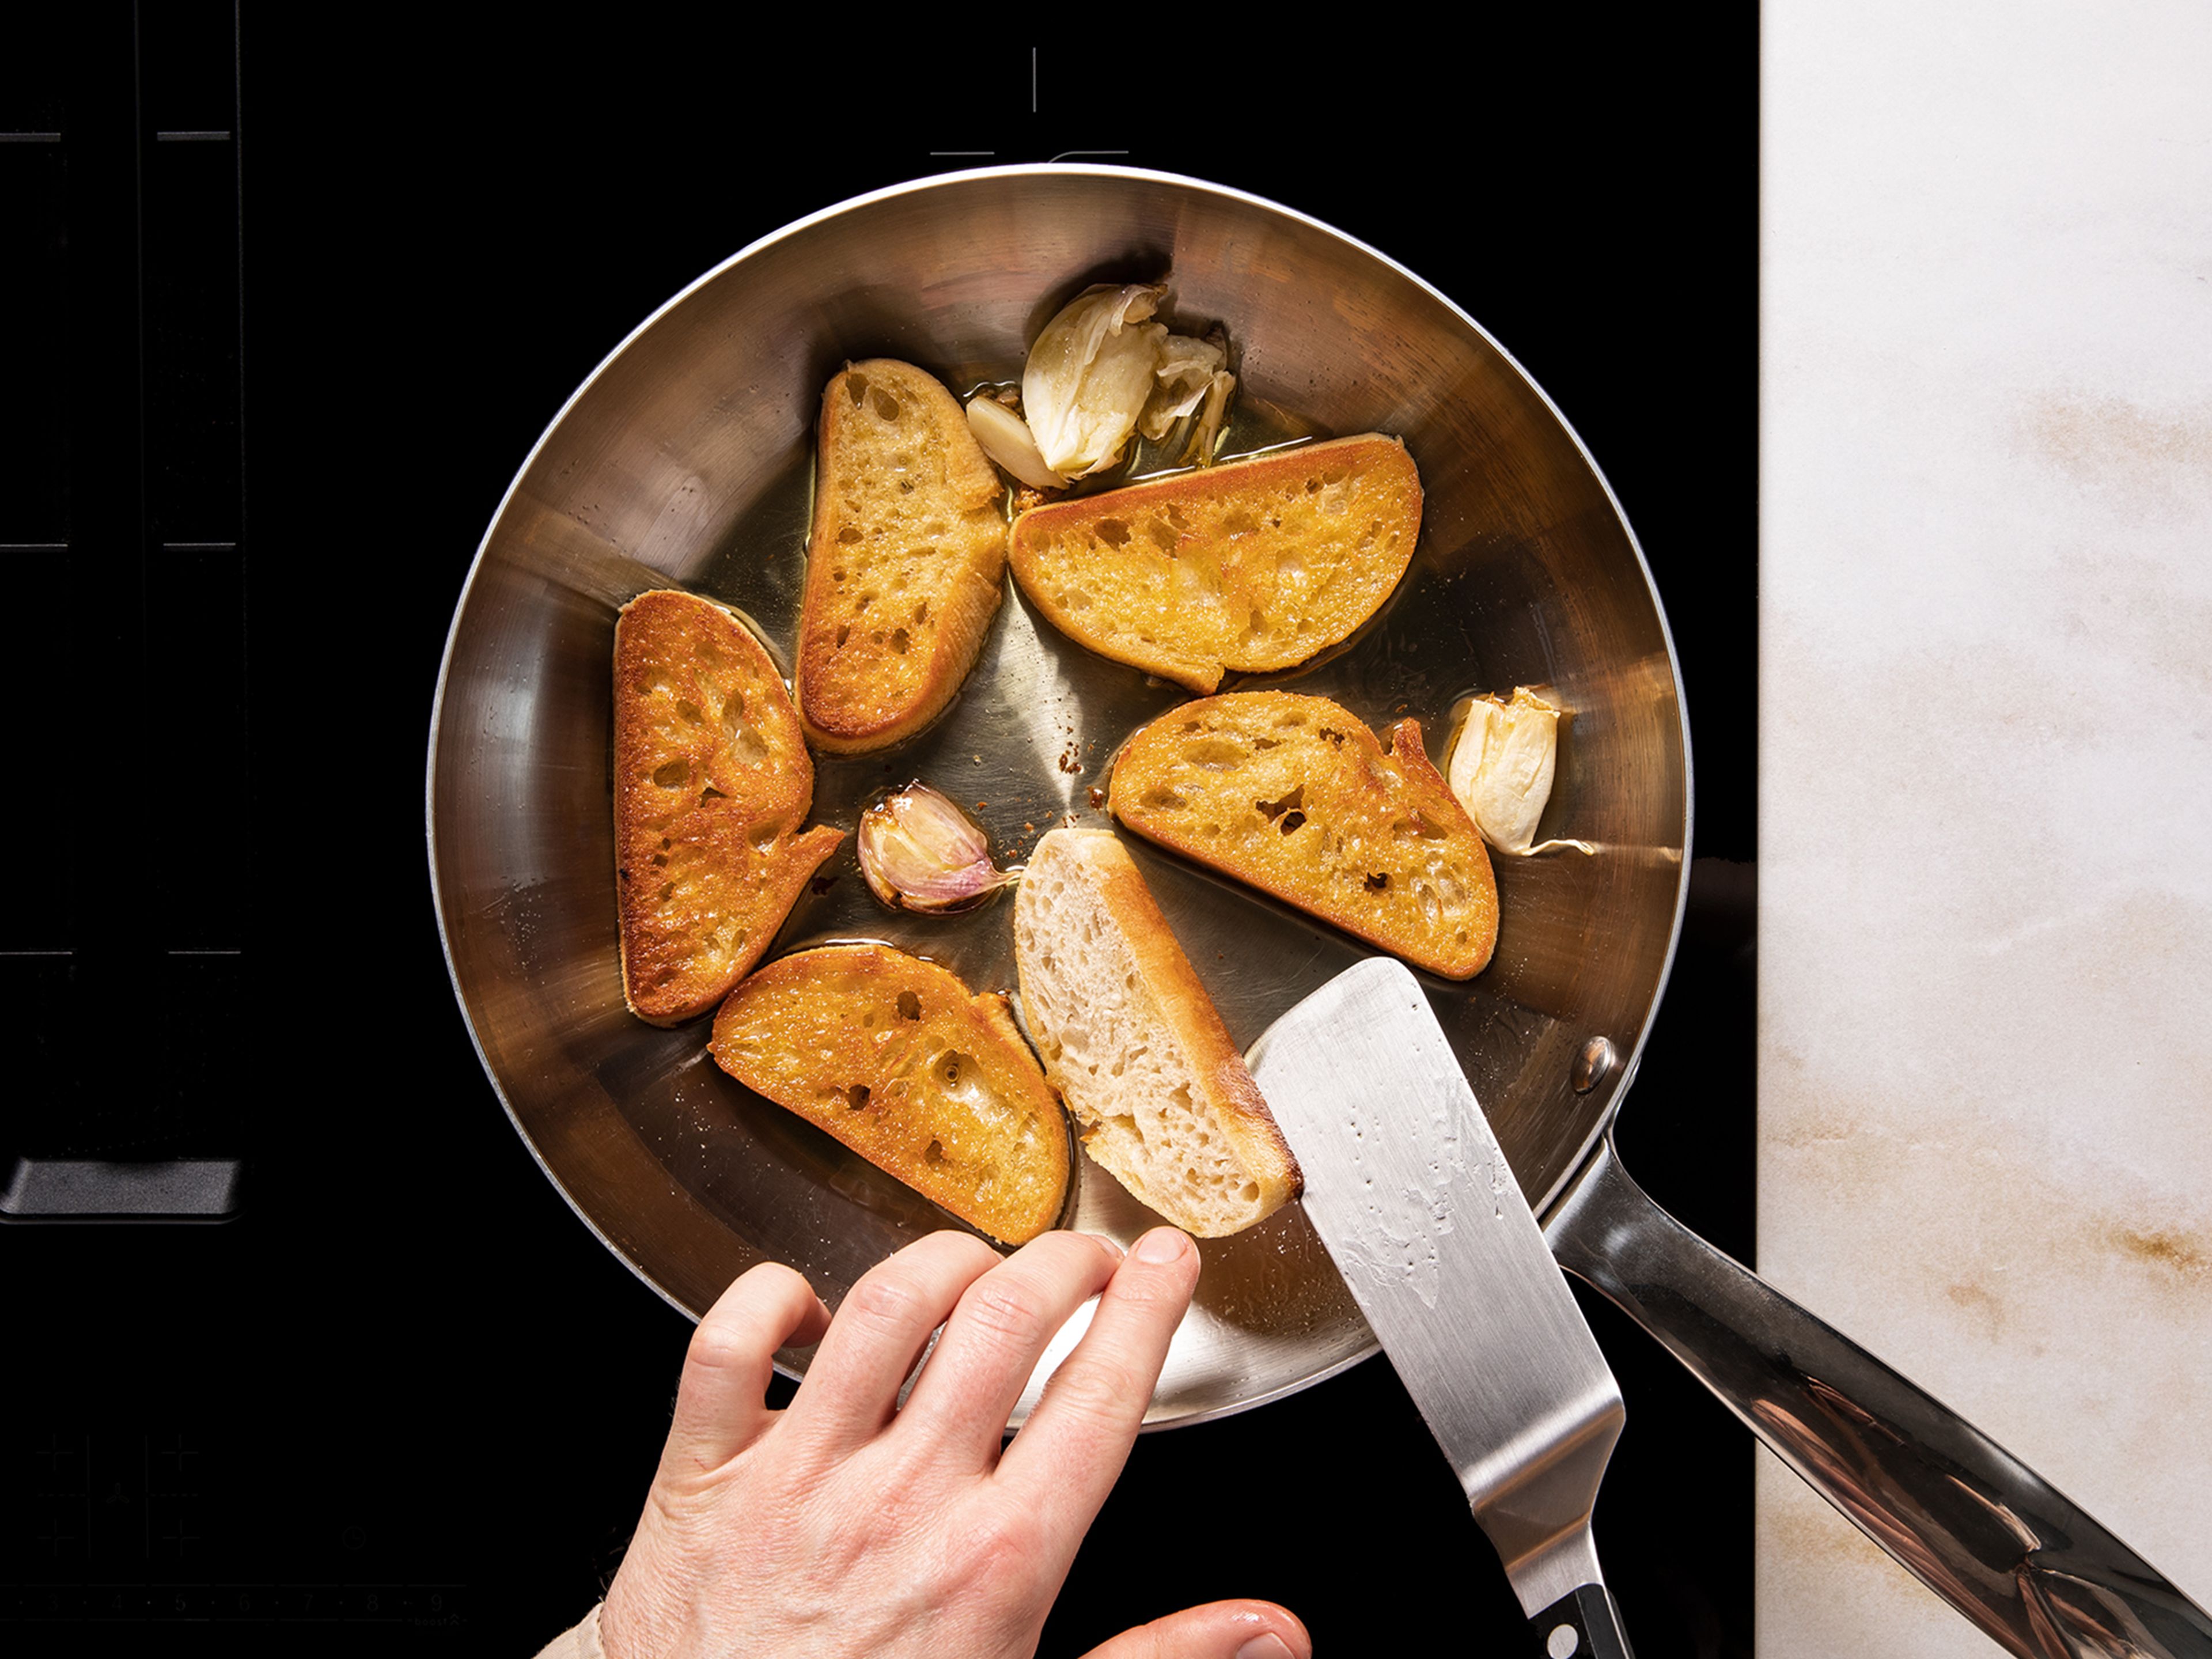 Das Ciabatta diagonal in 2 cm dicke Scheiben schneiden. Olivenöl bei mittlerer Hitze in einer Pfanne erhitzen und das Ciabatta von beiden Seiten gold-gelb anbraten. Das geröstete Brot mit einer Knoblauchzehe einreiben und salzen.